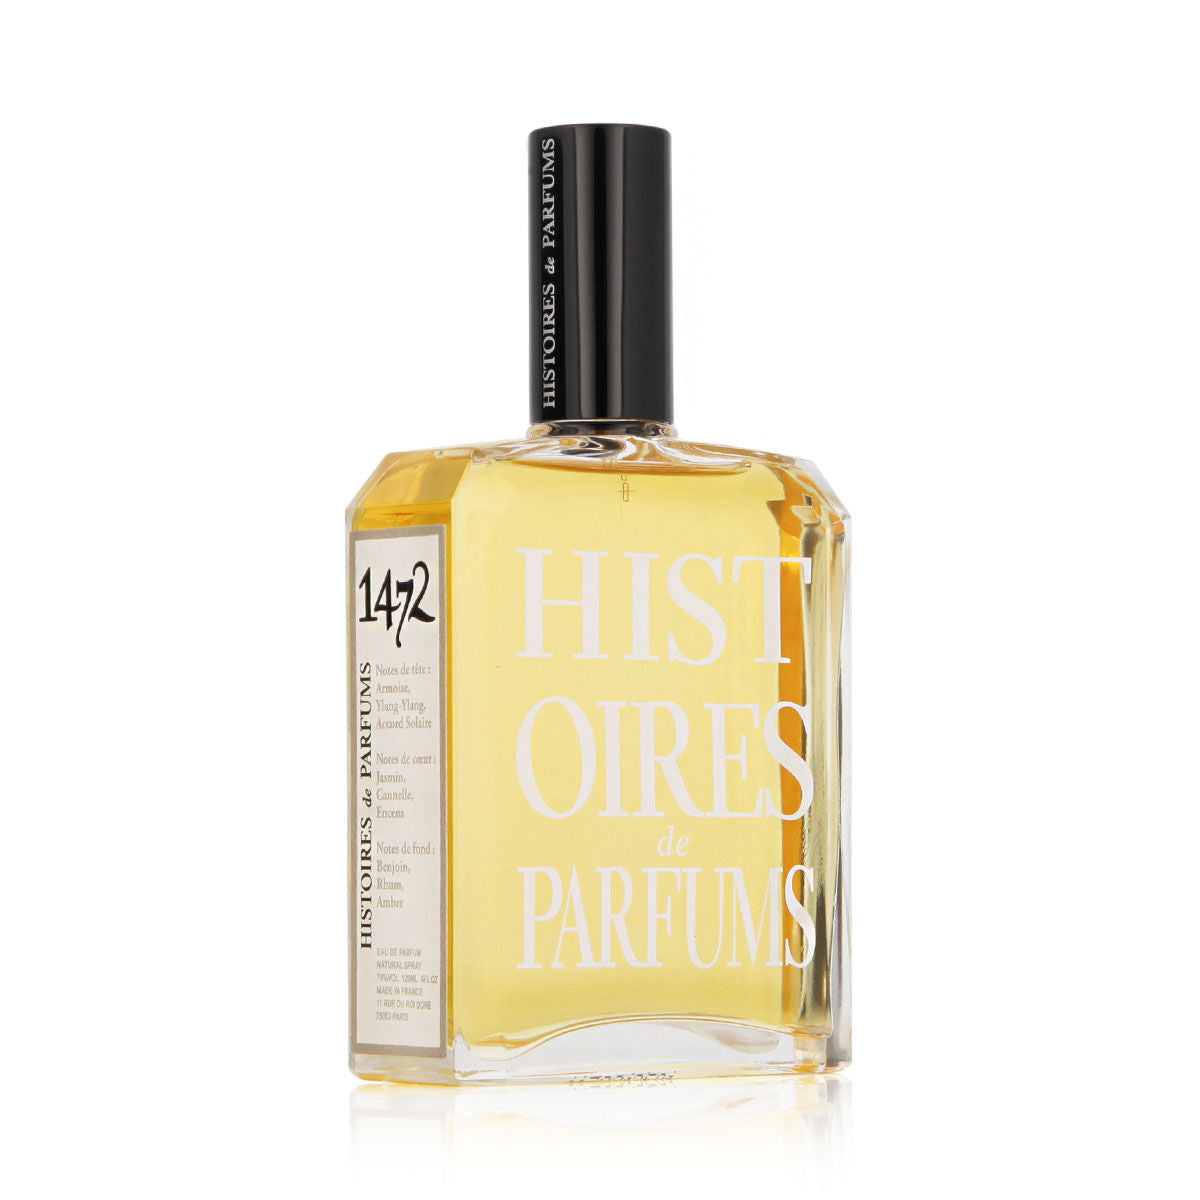 Uniseks Parfum Histoires de Parfums EDP 1472 La Divina Commedia 120 ml